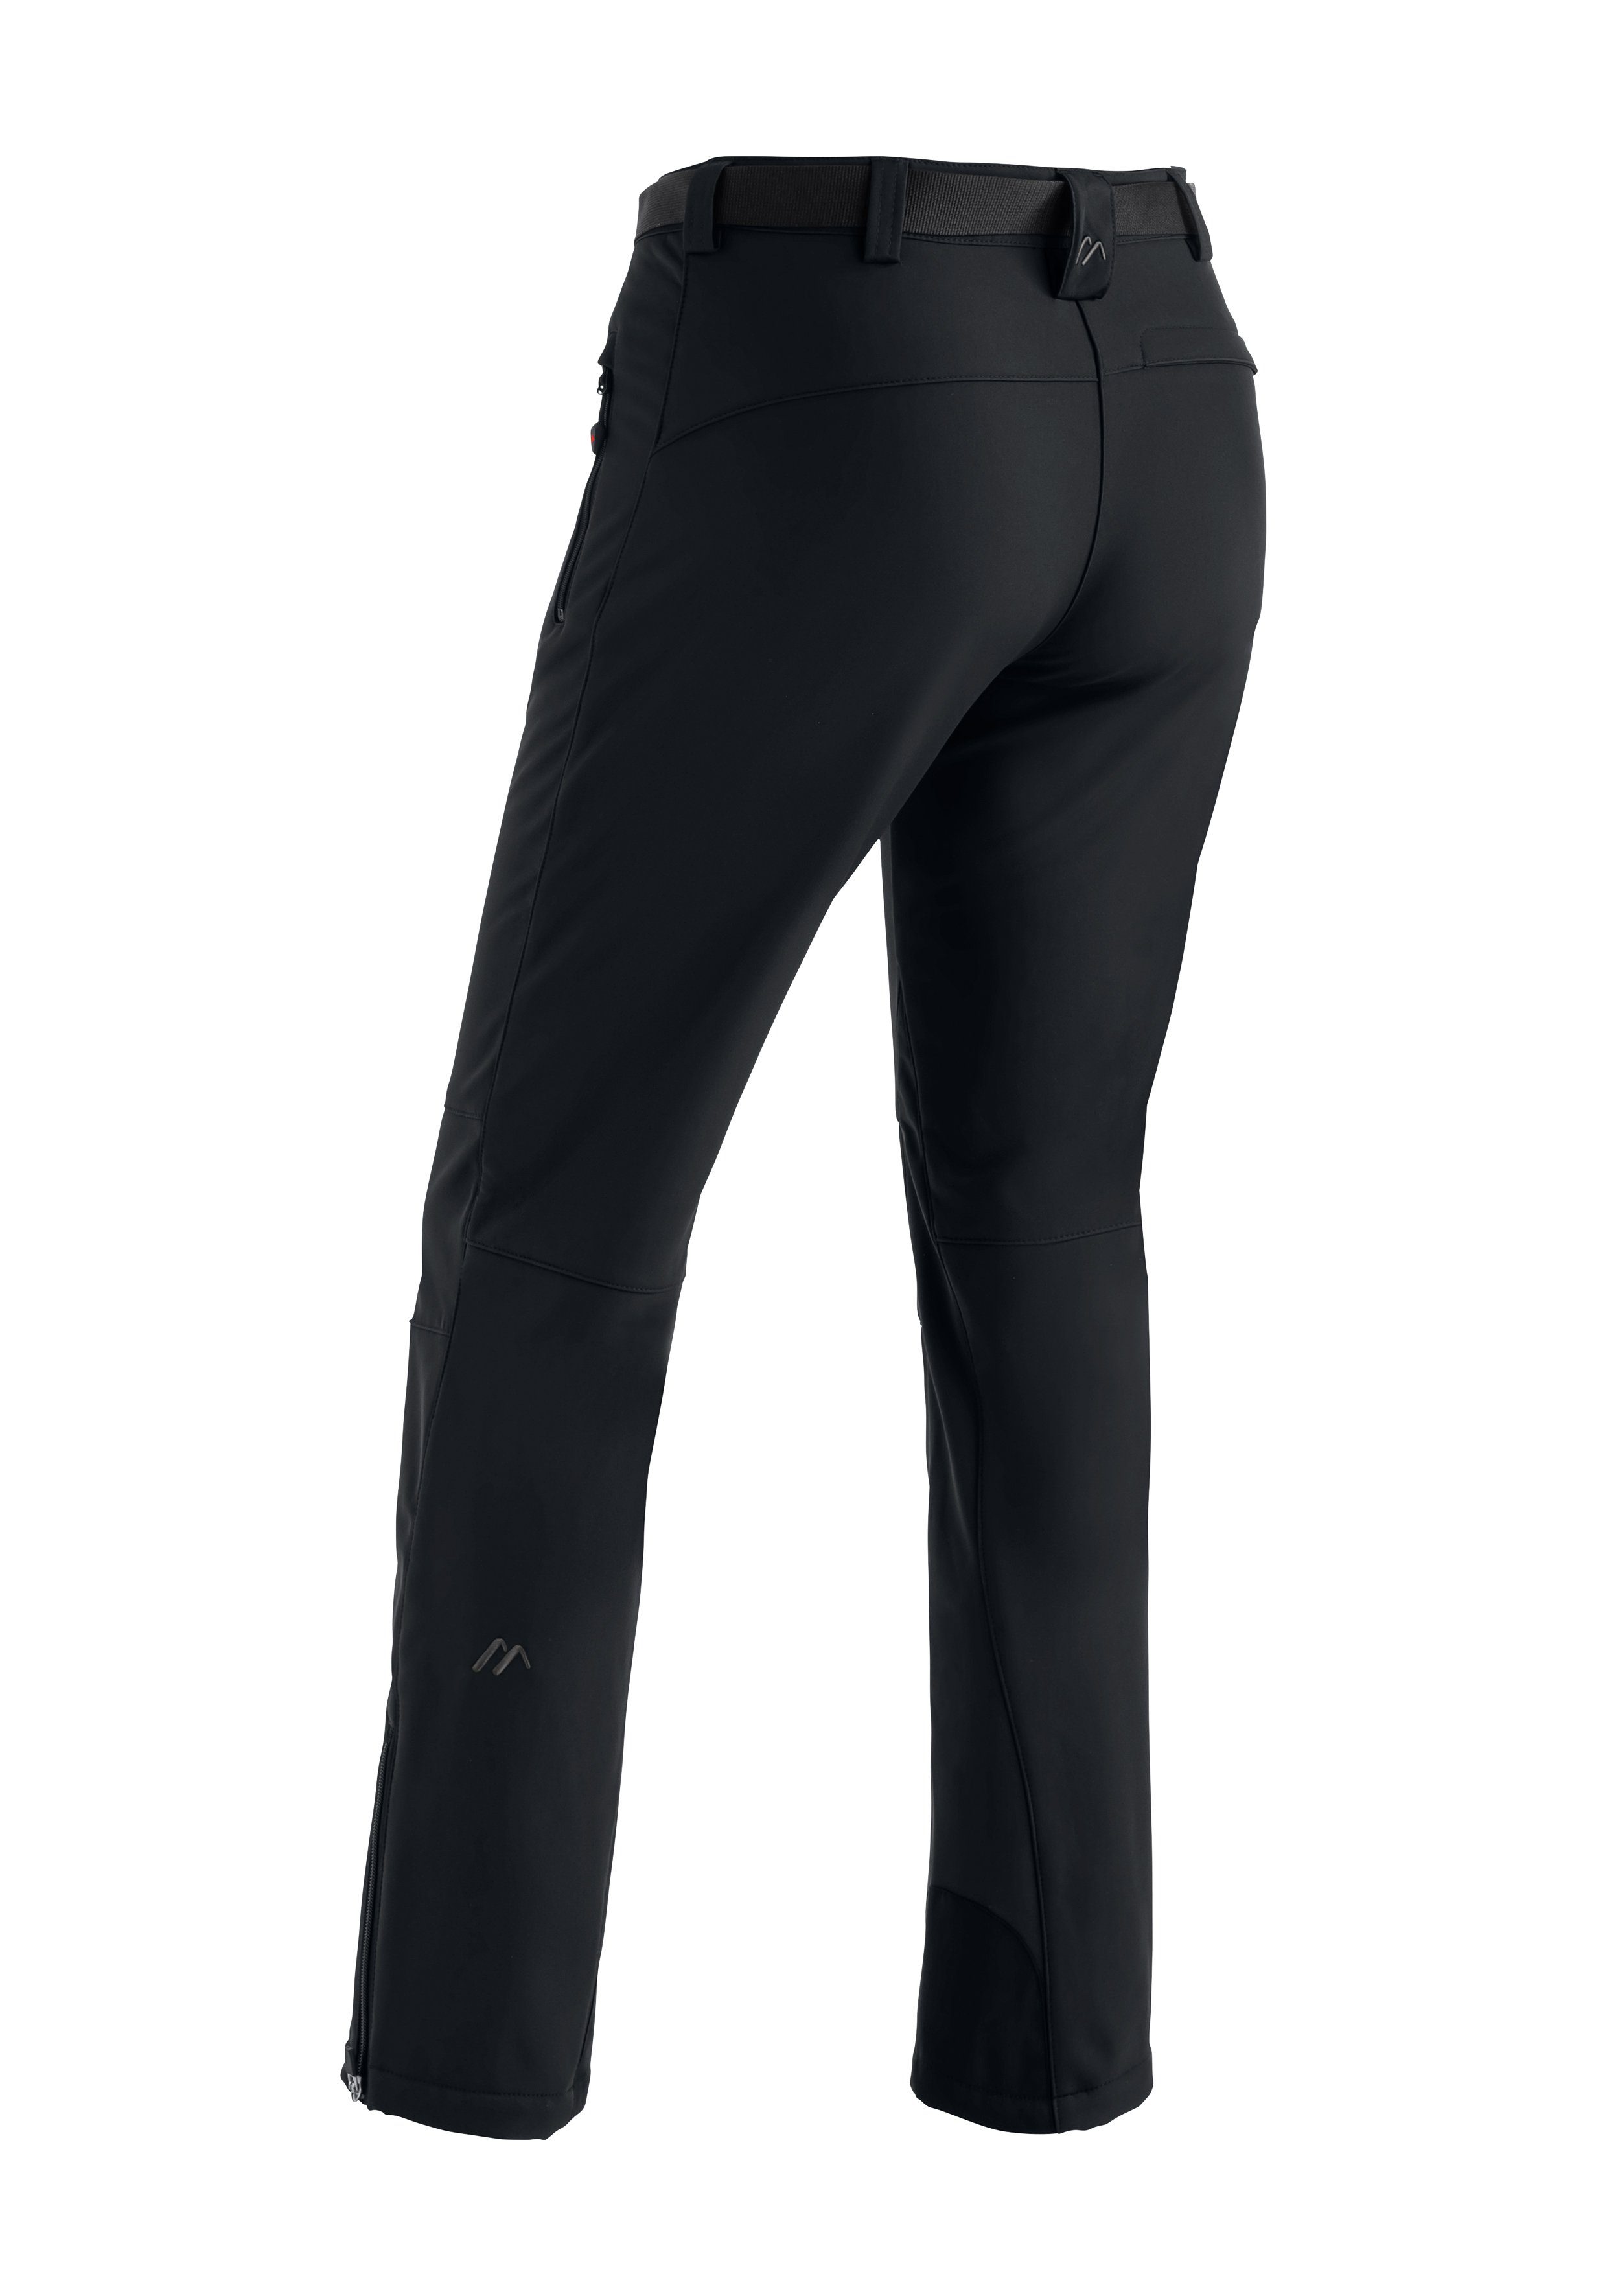 Maier Sports W Pants Softshellhose, schwarz Tech winddicht elastisch Funktionshose Warme und